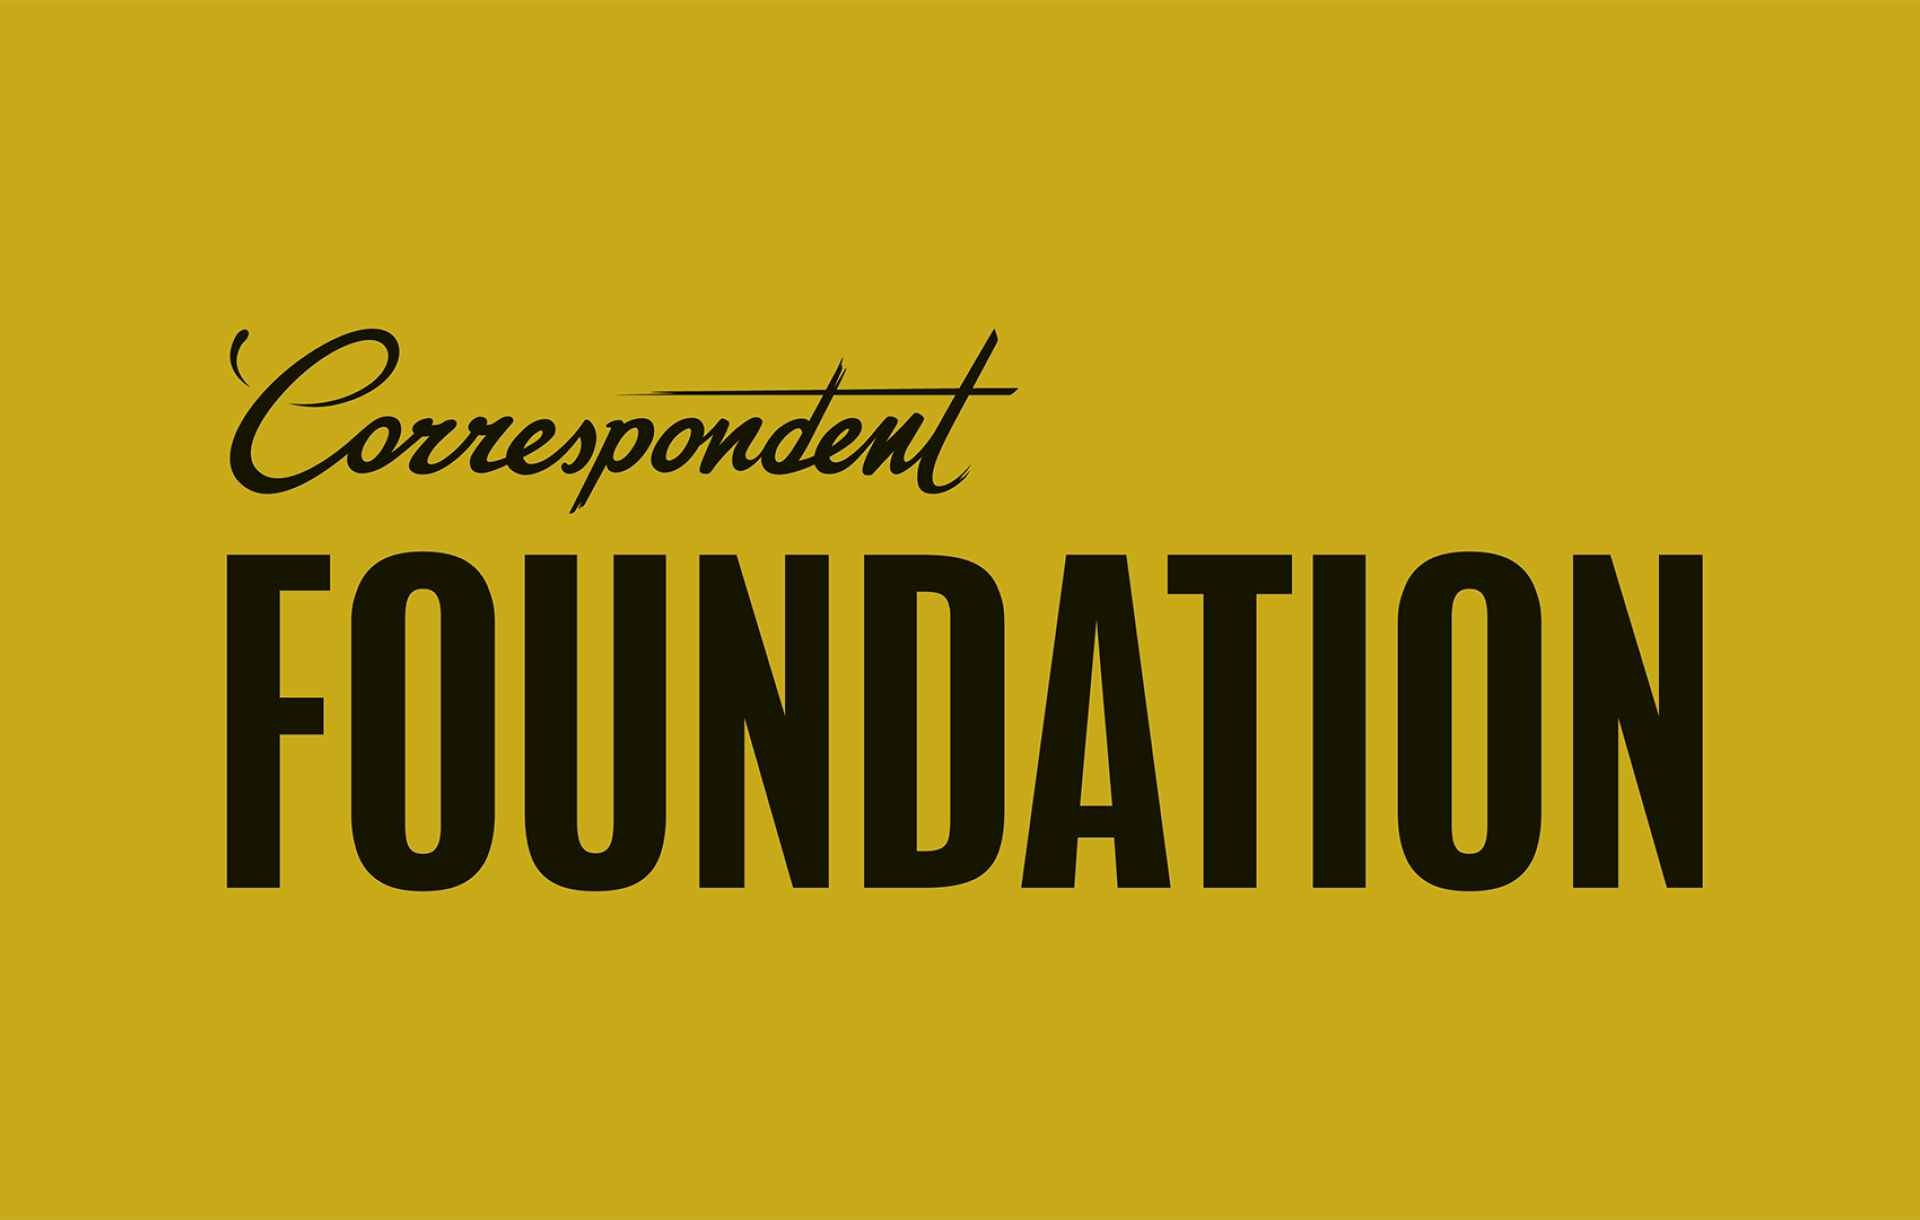 De Correspondent Foundation